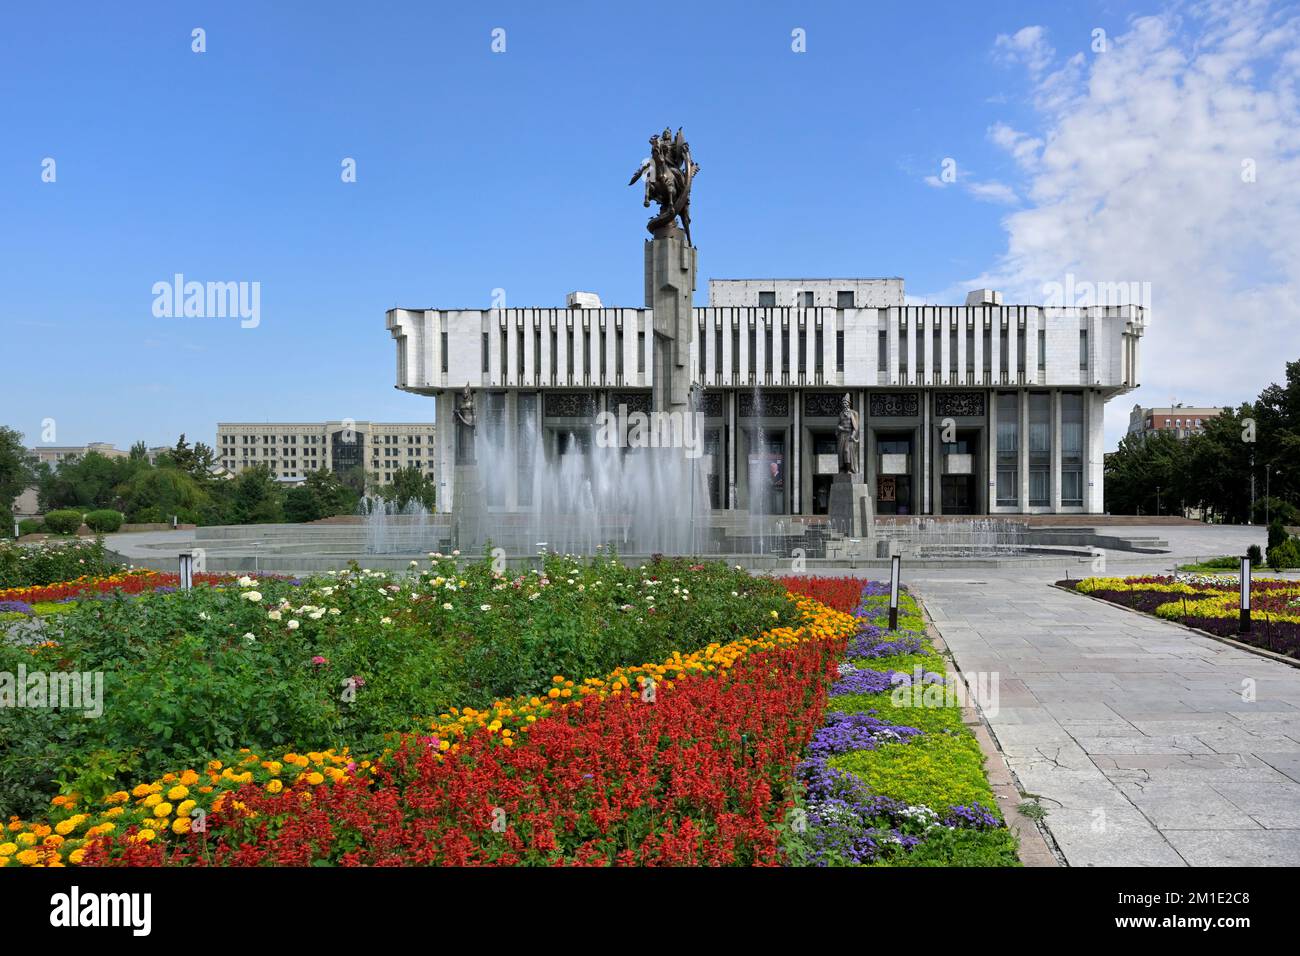 Kirghiz National Philharmonic House and Fountain, statues évocatrices du poème épique Manas, Bichkek, Kirghizistan Banque D'Images